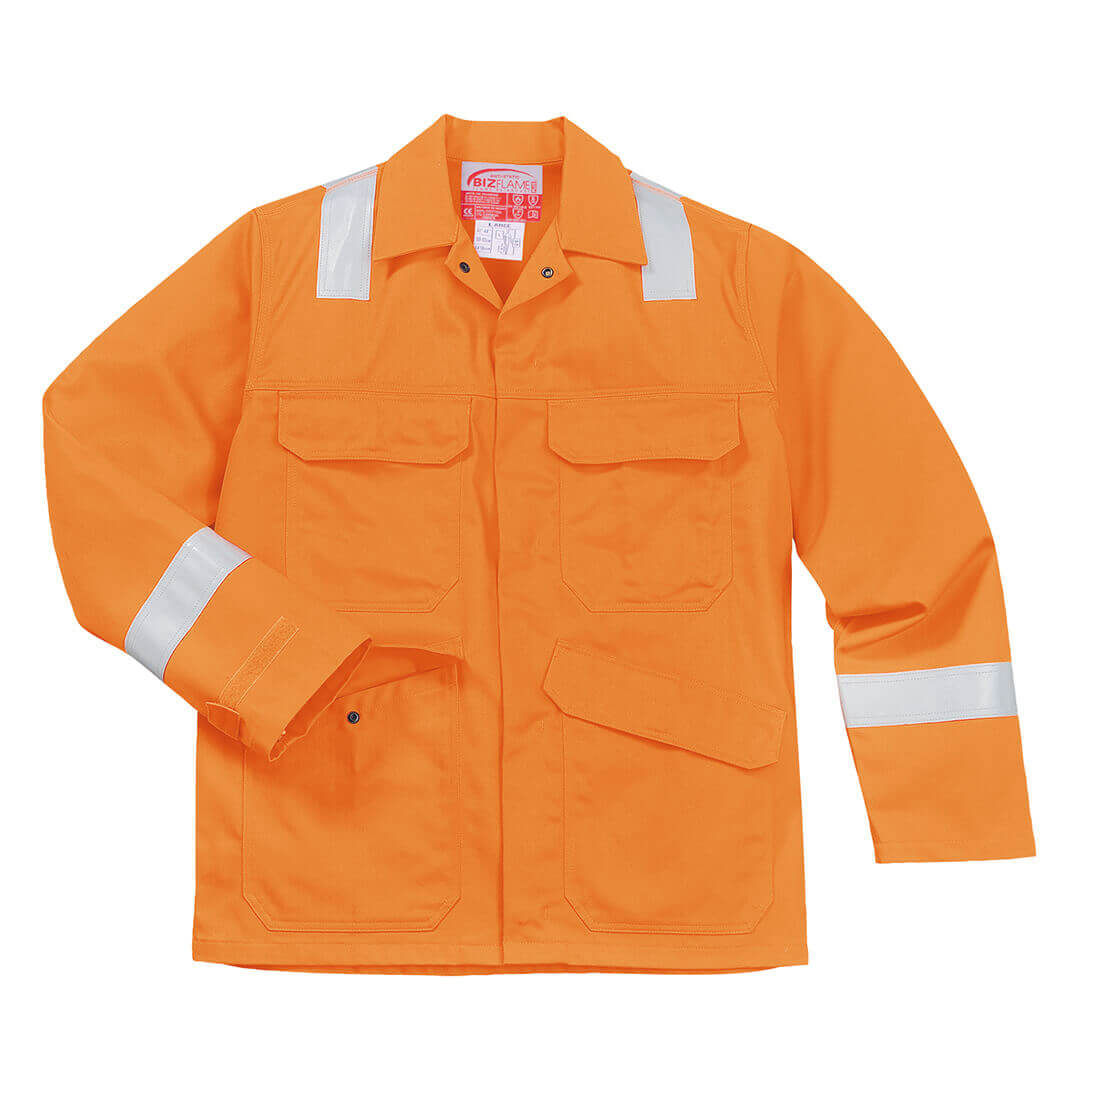 Image of Biz Flame Mens Flame Resistant Jacket Orange S